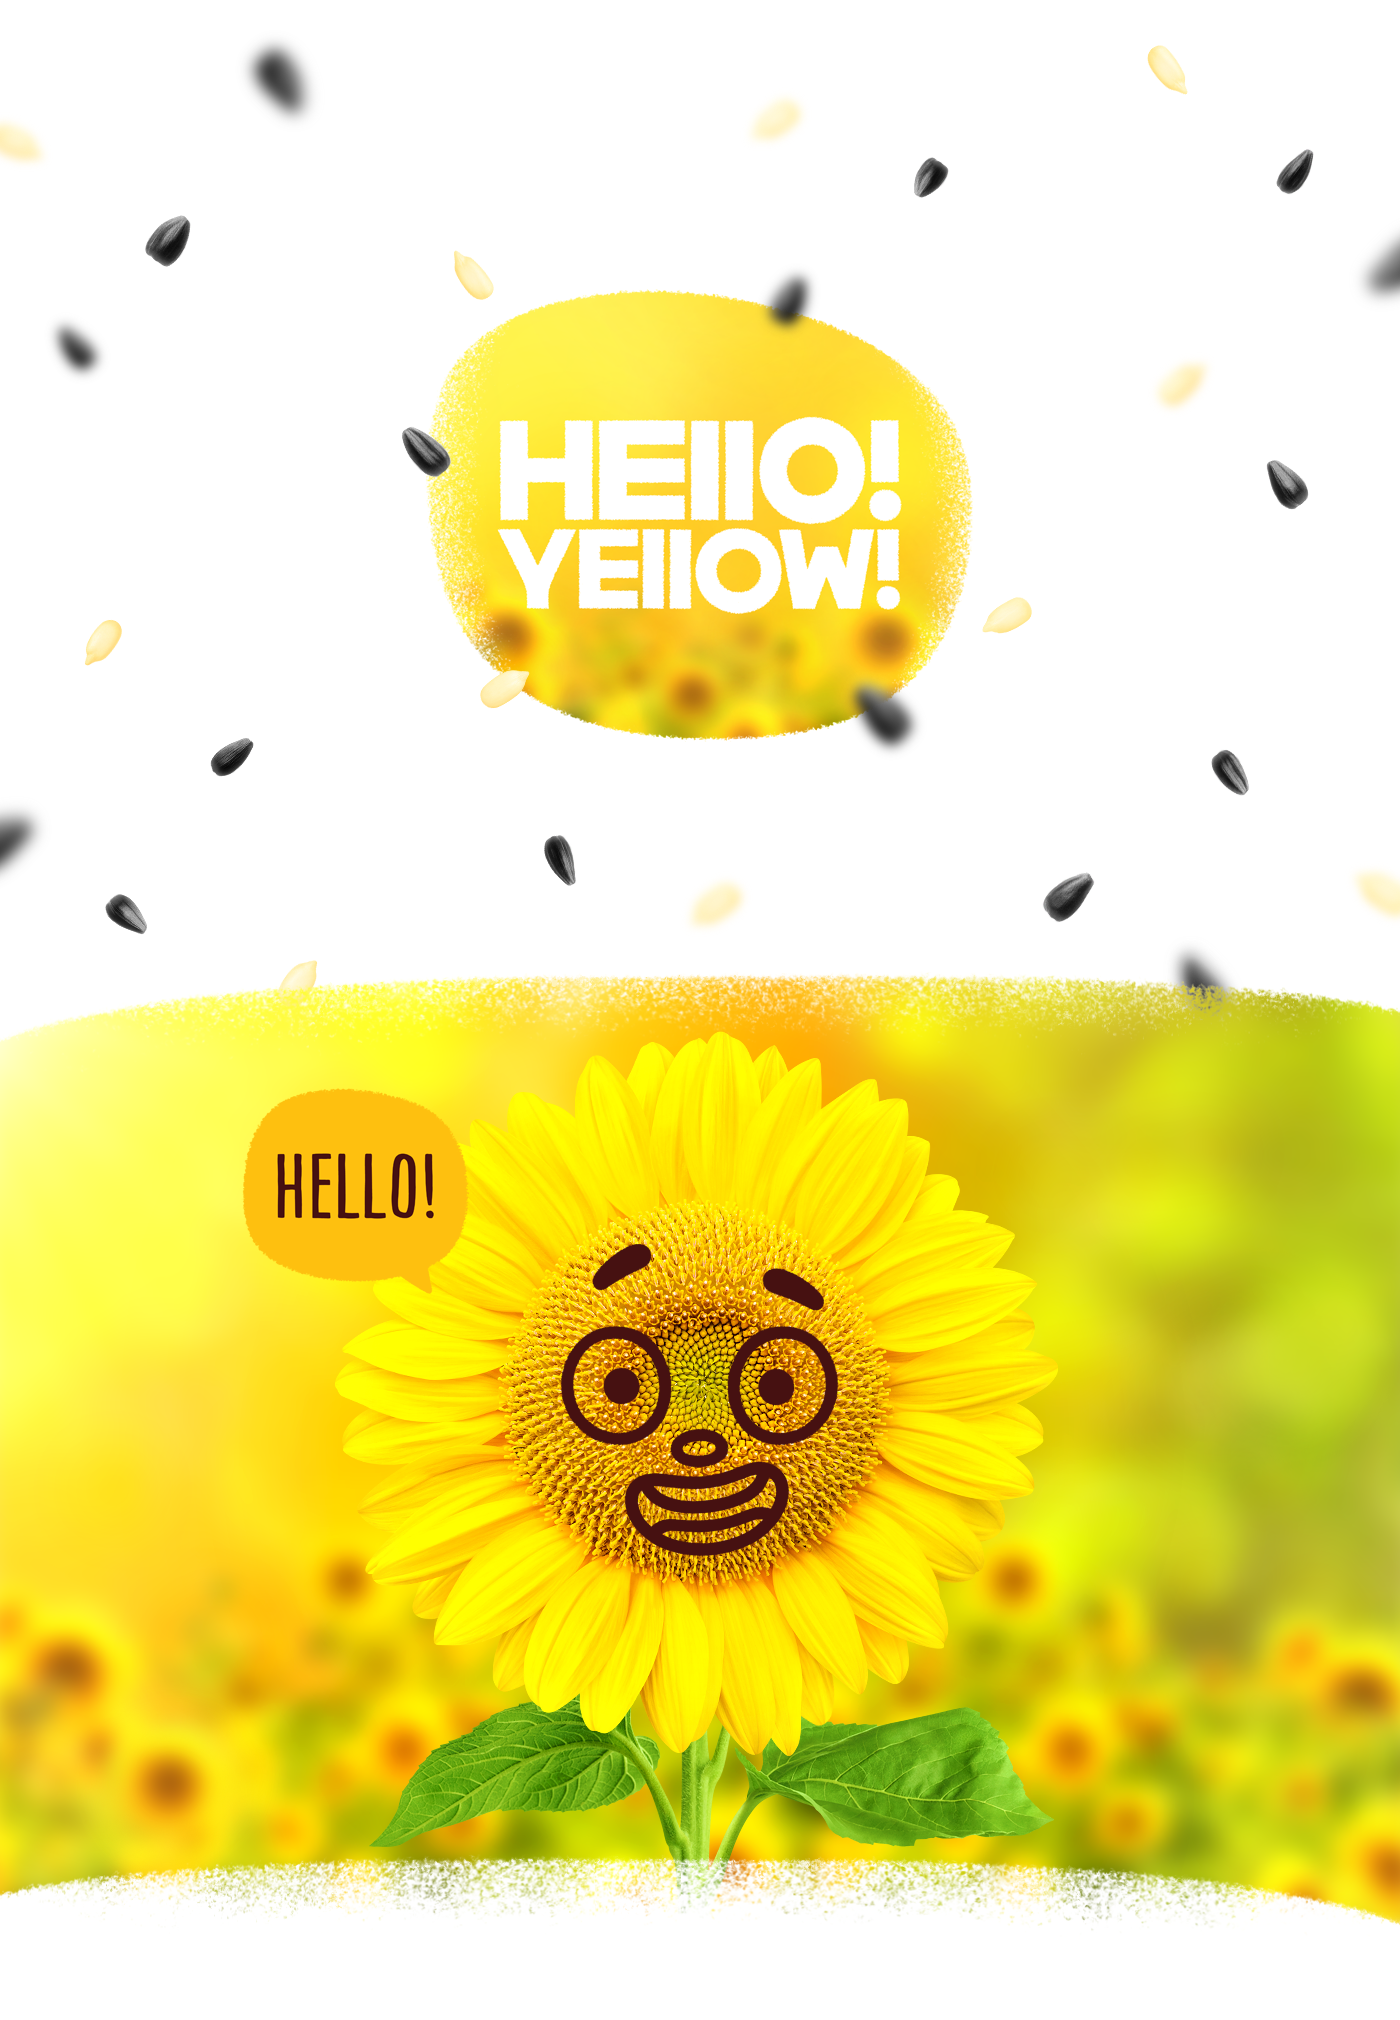 Хеллоу желтый. Семена hello. Hello Yellow. Желтый из брендов френдс. Roasted Sunflower Seeds Packaging Design.